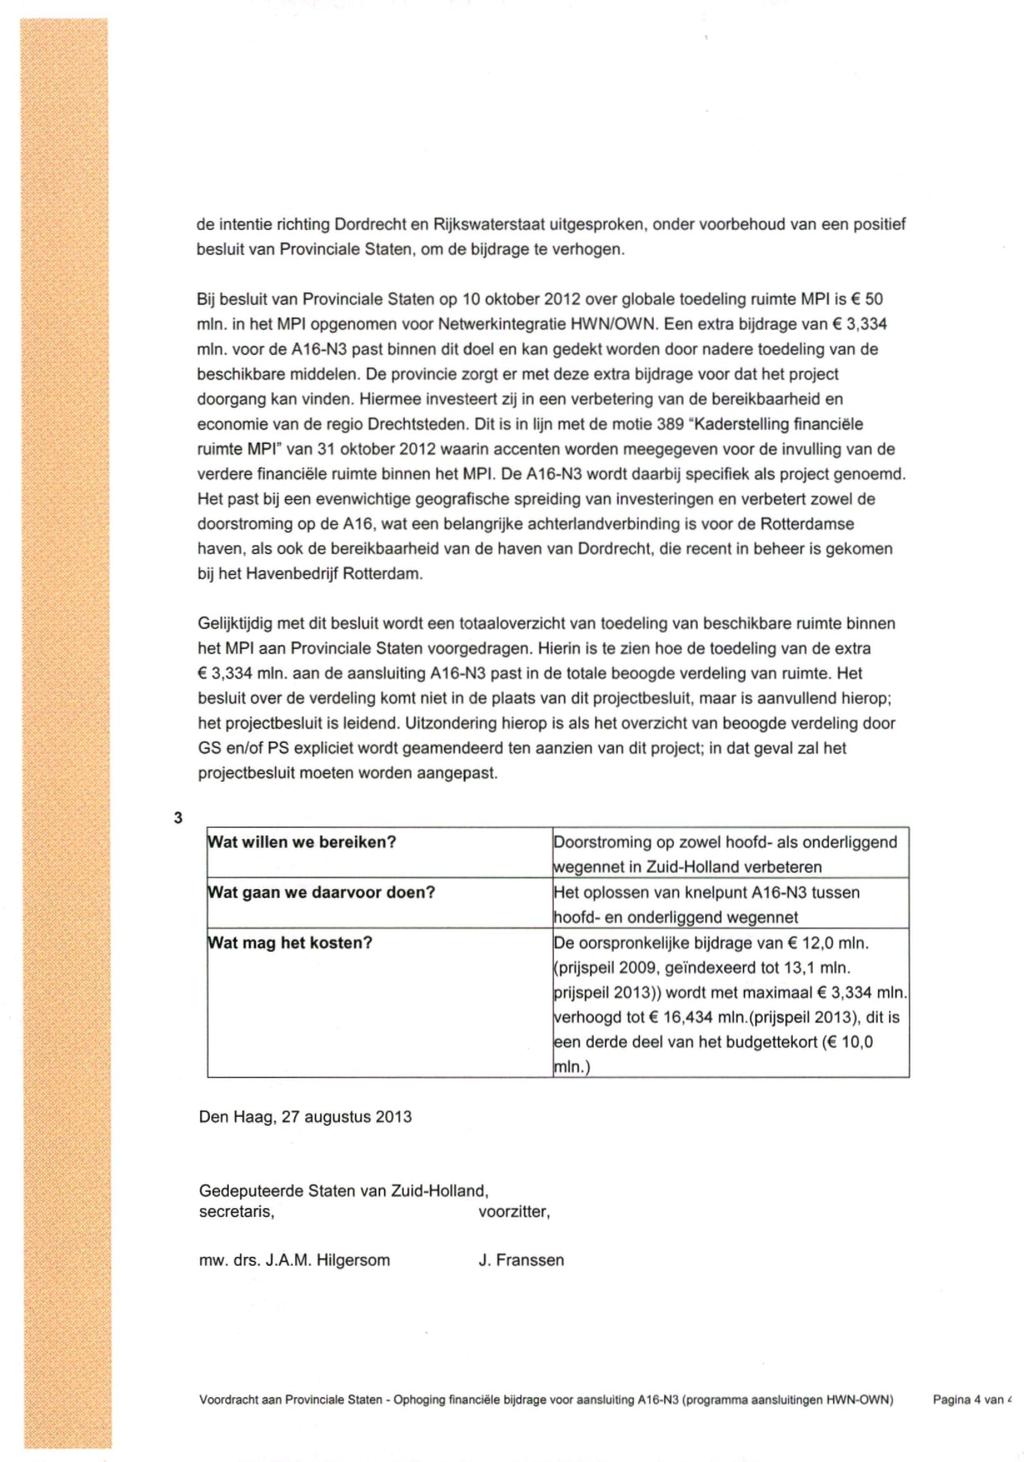 de intentie richting Dordrecht en Rijkswaterstaat uitgesproken, onder voorbehoud van een positief besluit van Provinciale Staten, om de bijdrage te verhogen.